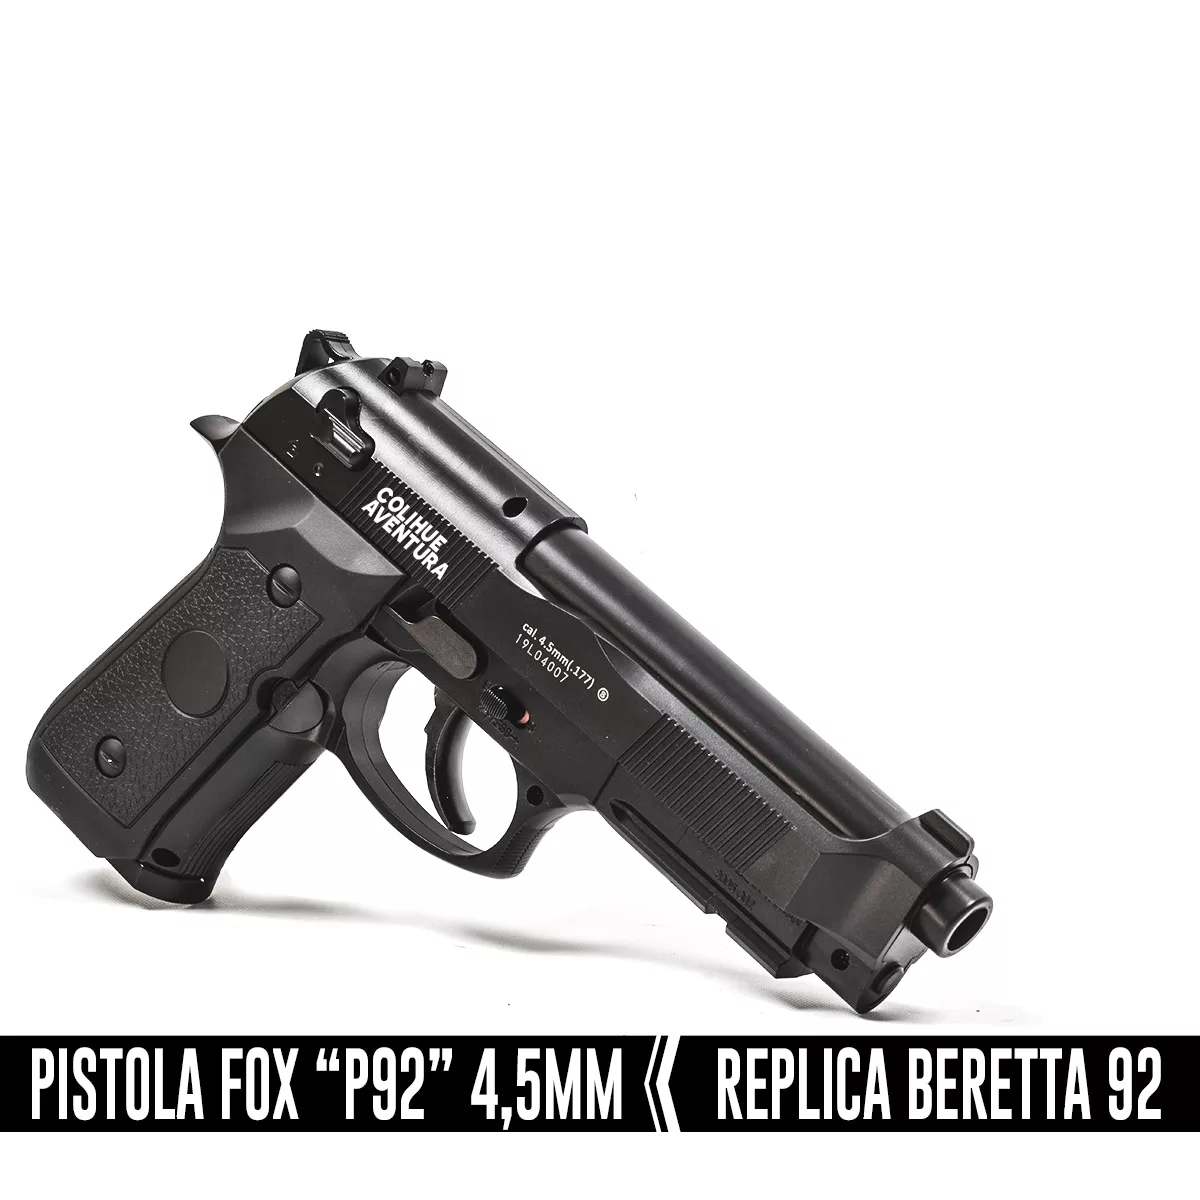 Pistola Co2 Fox P92 cal 4,5mm // Replica Beretta 92 - Colihue Aventura